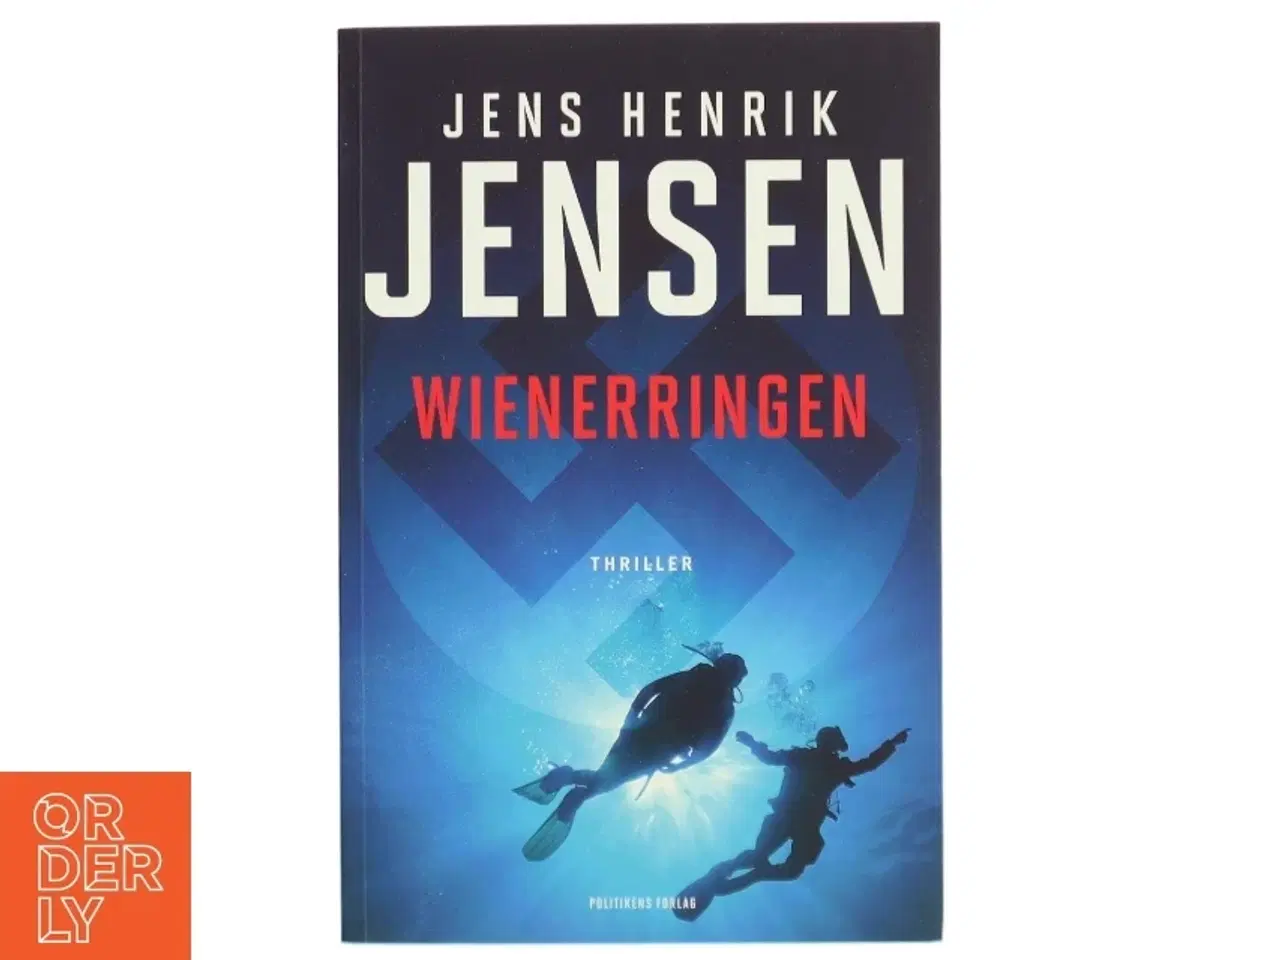 Billede 1 - 'Wienerringen' af Jens Henrik Jensen (f. 1963) (bog)